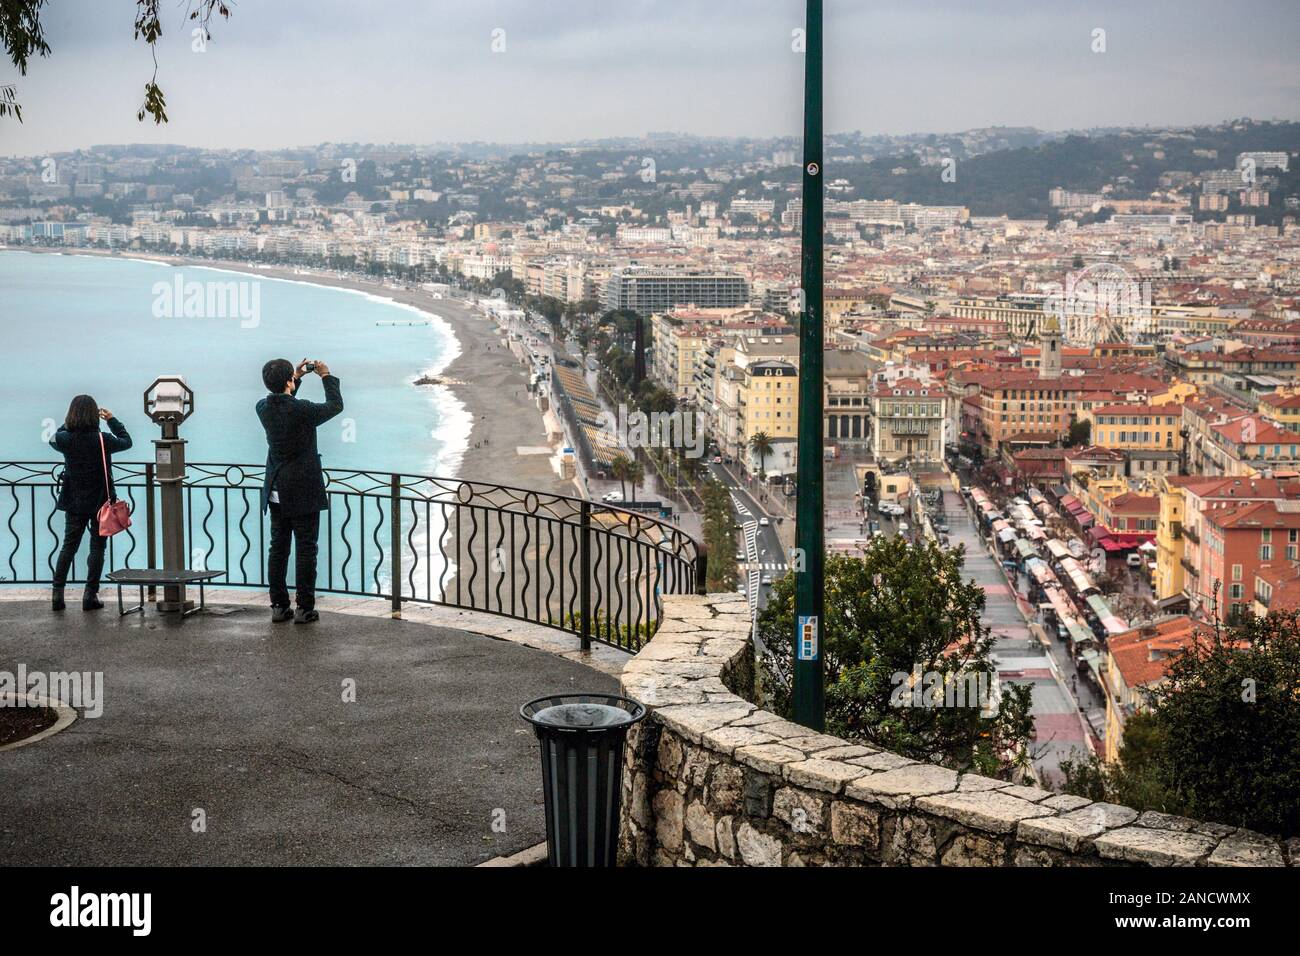 Touristen, die Fotos von einem Aussichtspunkt im Parc de la Colline du Chateau oder Castle Hill, Nizza, französische Riviera, Cote d'Azur, Frankreich machen. Stockfoto